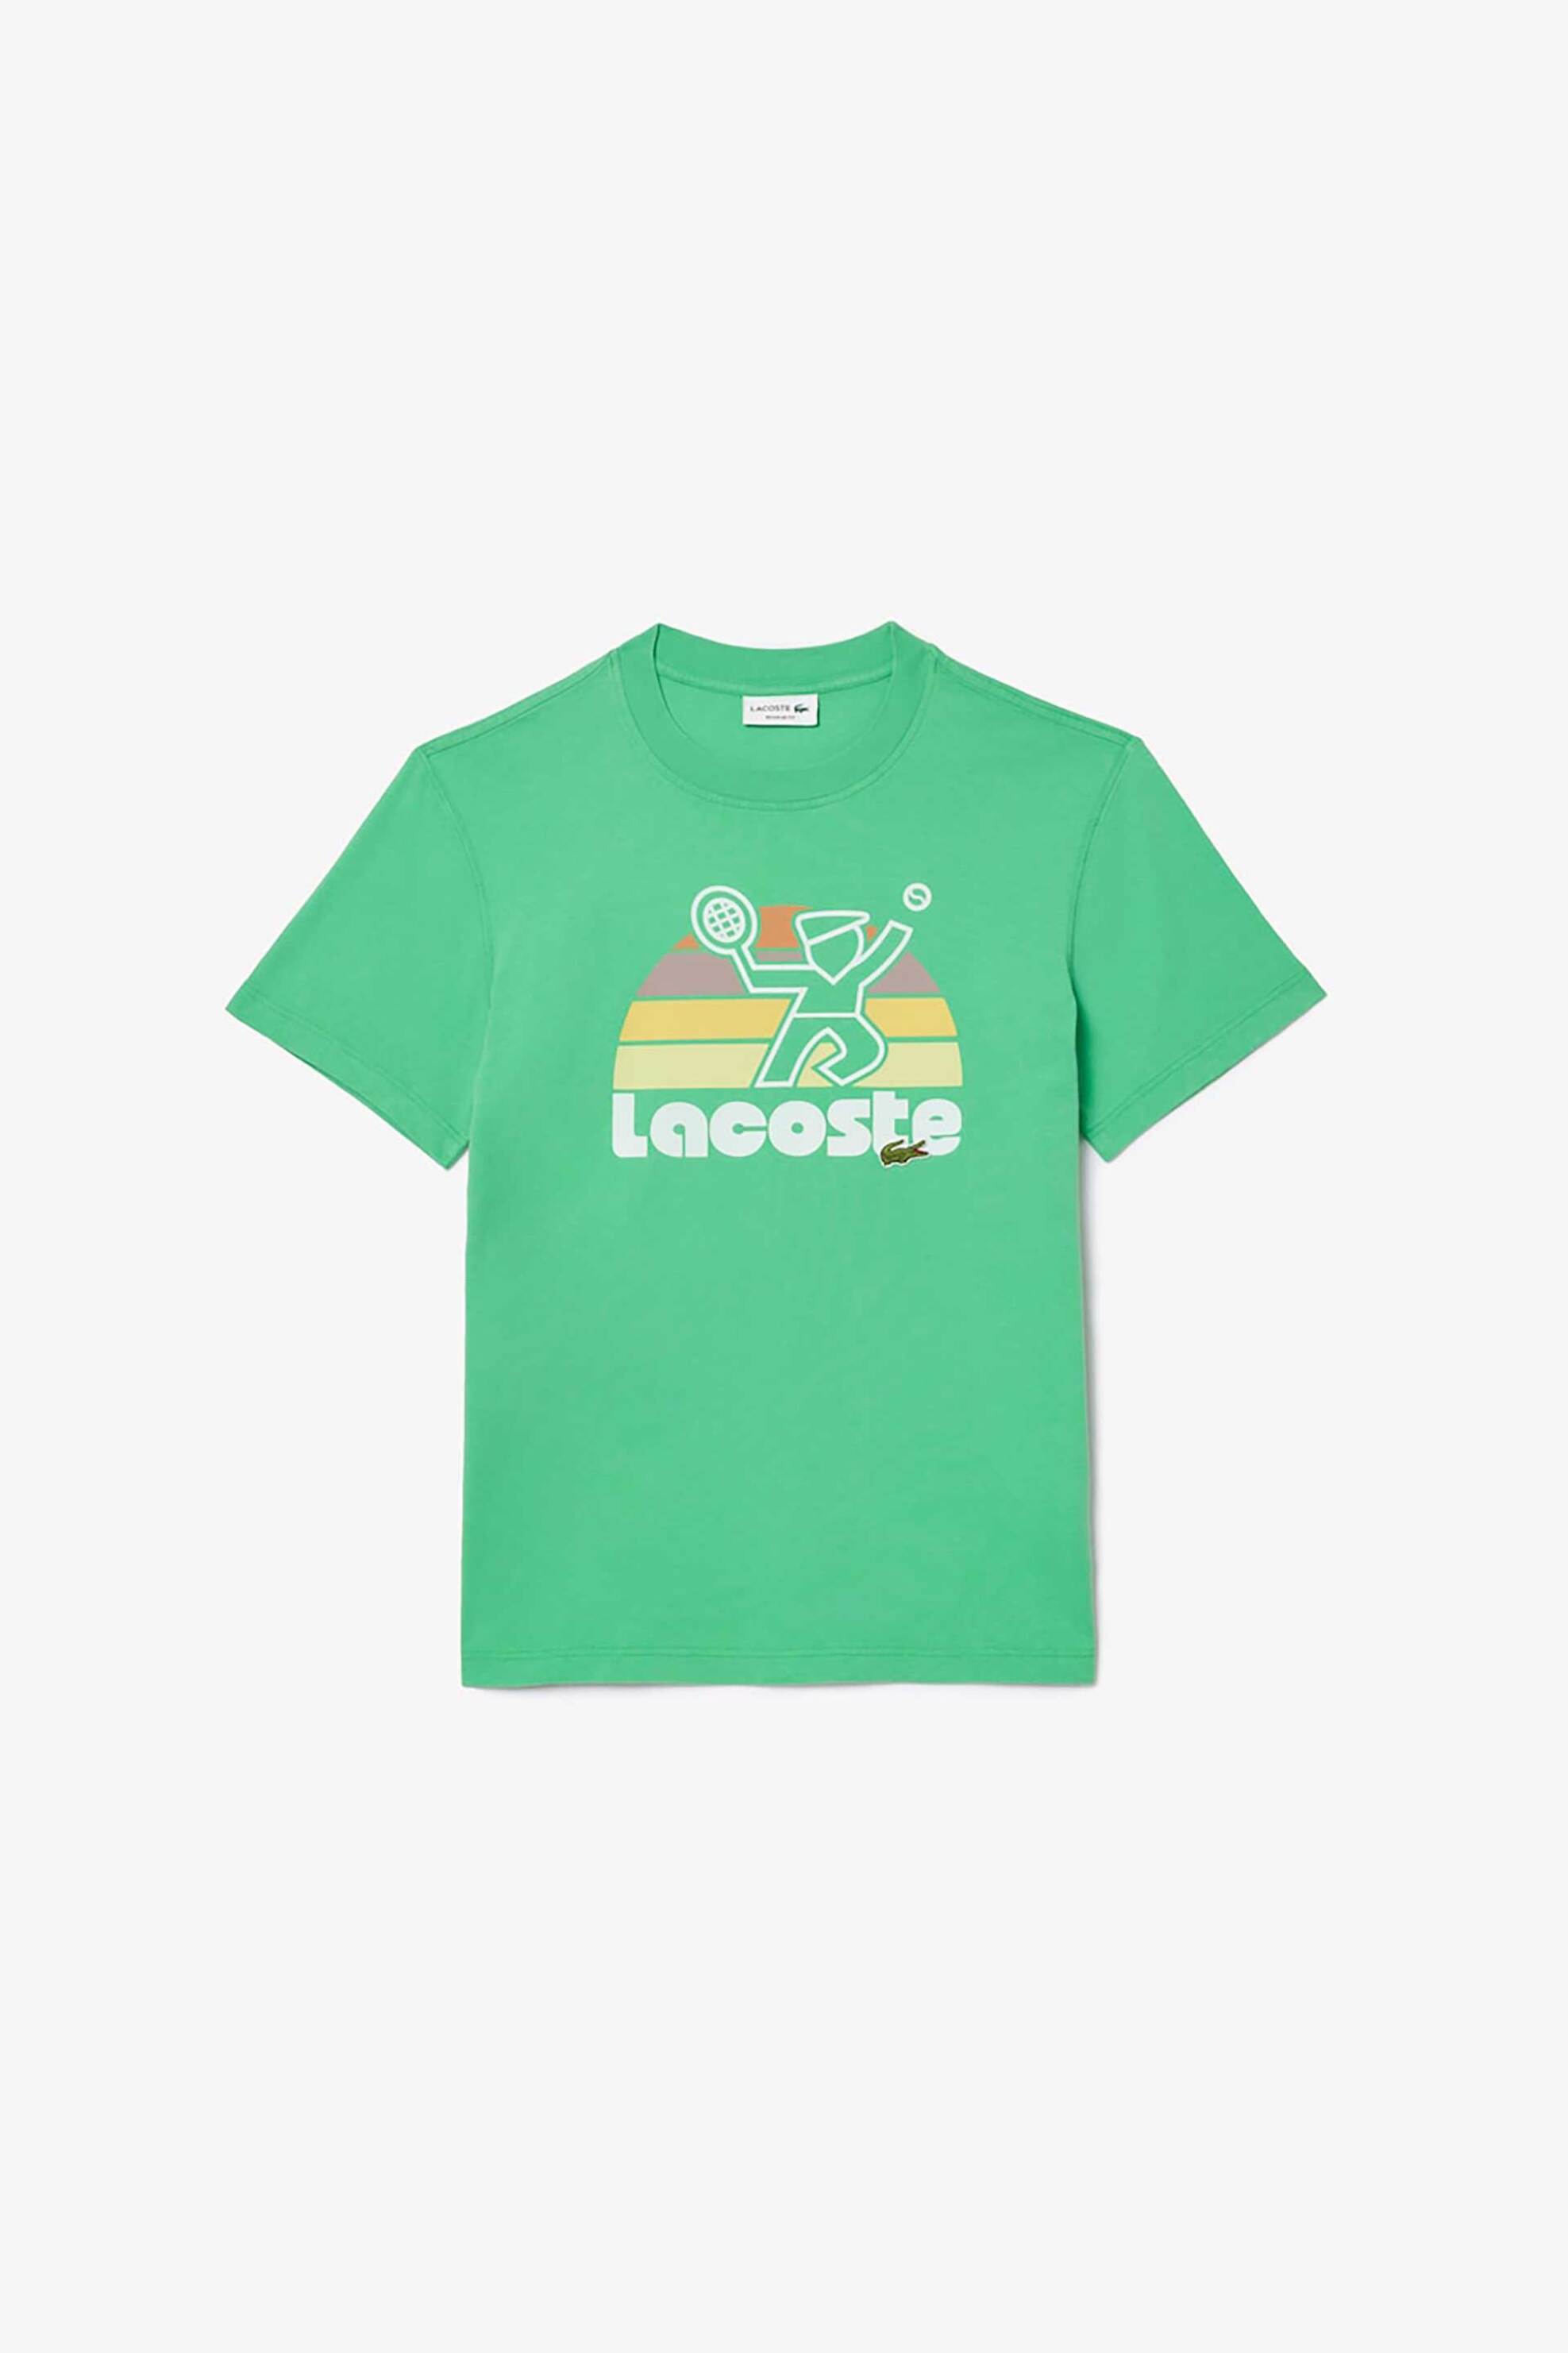 Ανδρική Μόδα > Ανδρικά Ρούχα > Ανδρικές Μπλούζες > Ανδρικά T-Shirts Lacoste ανδρικό T-shirt μονόχρωμο με contrast logo print και ανάγλυφη λεπτομέρεια - TH8567 Πράσινο